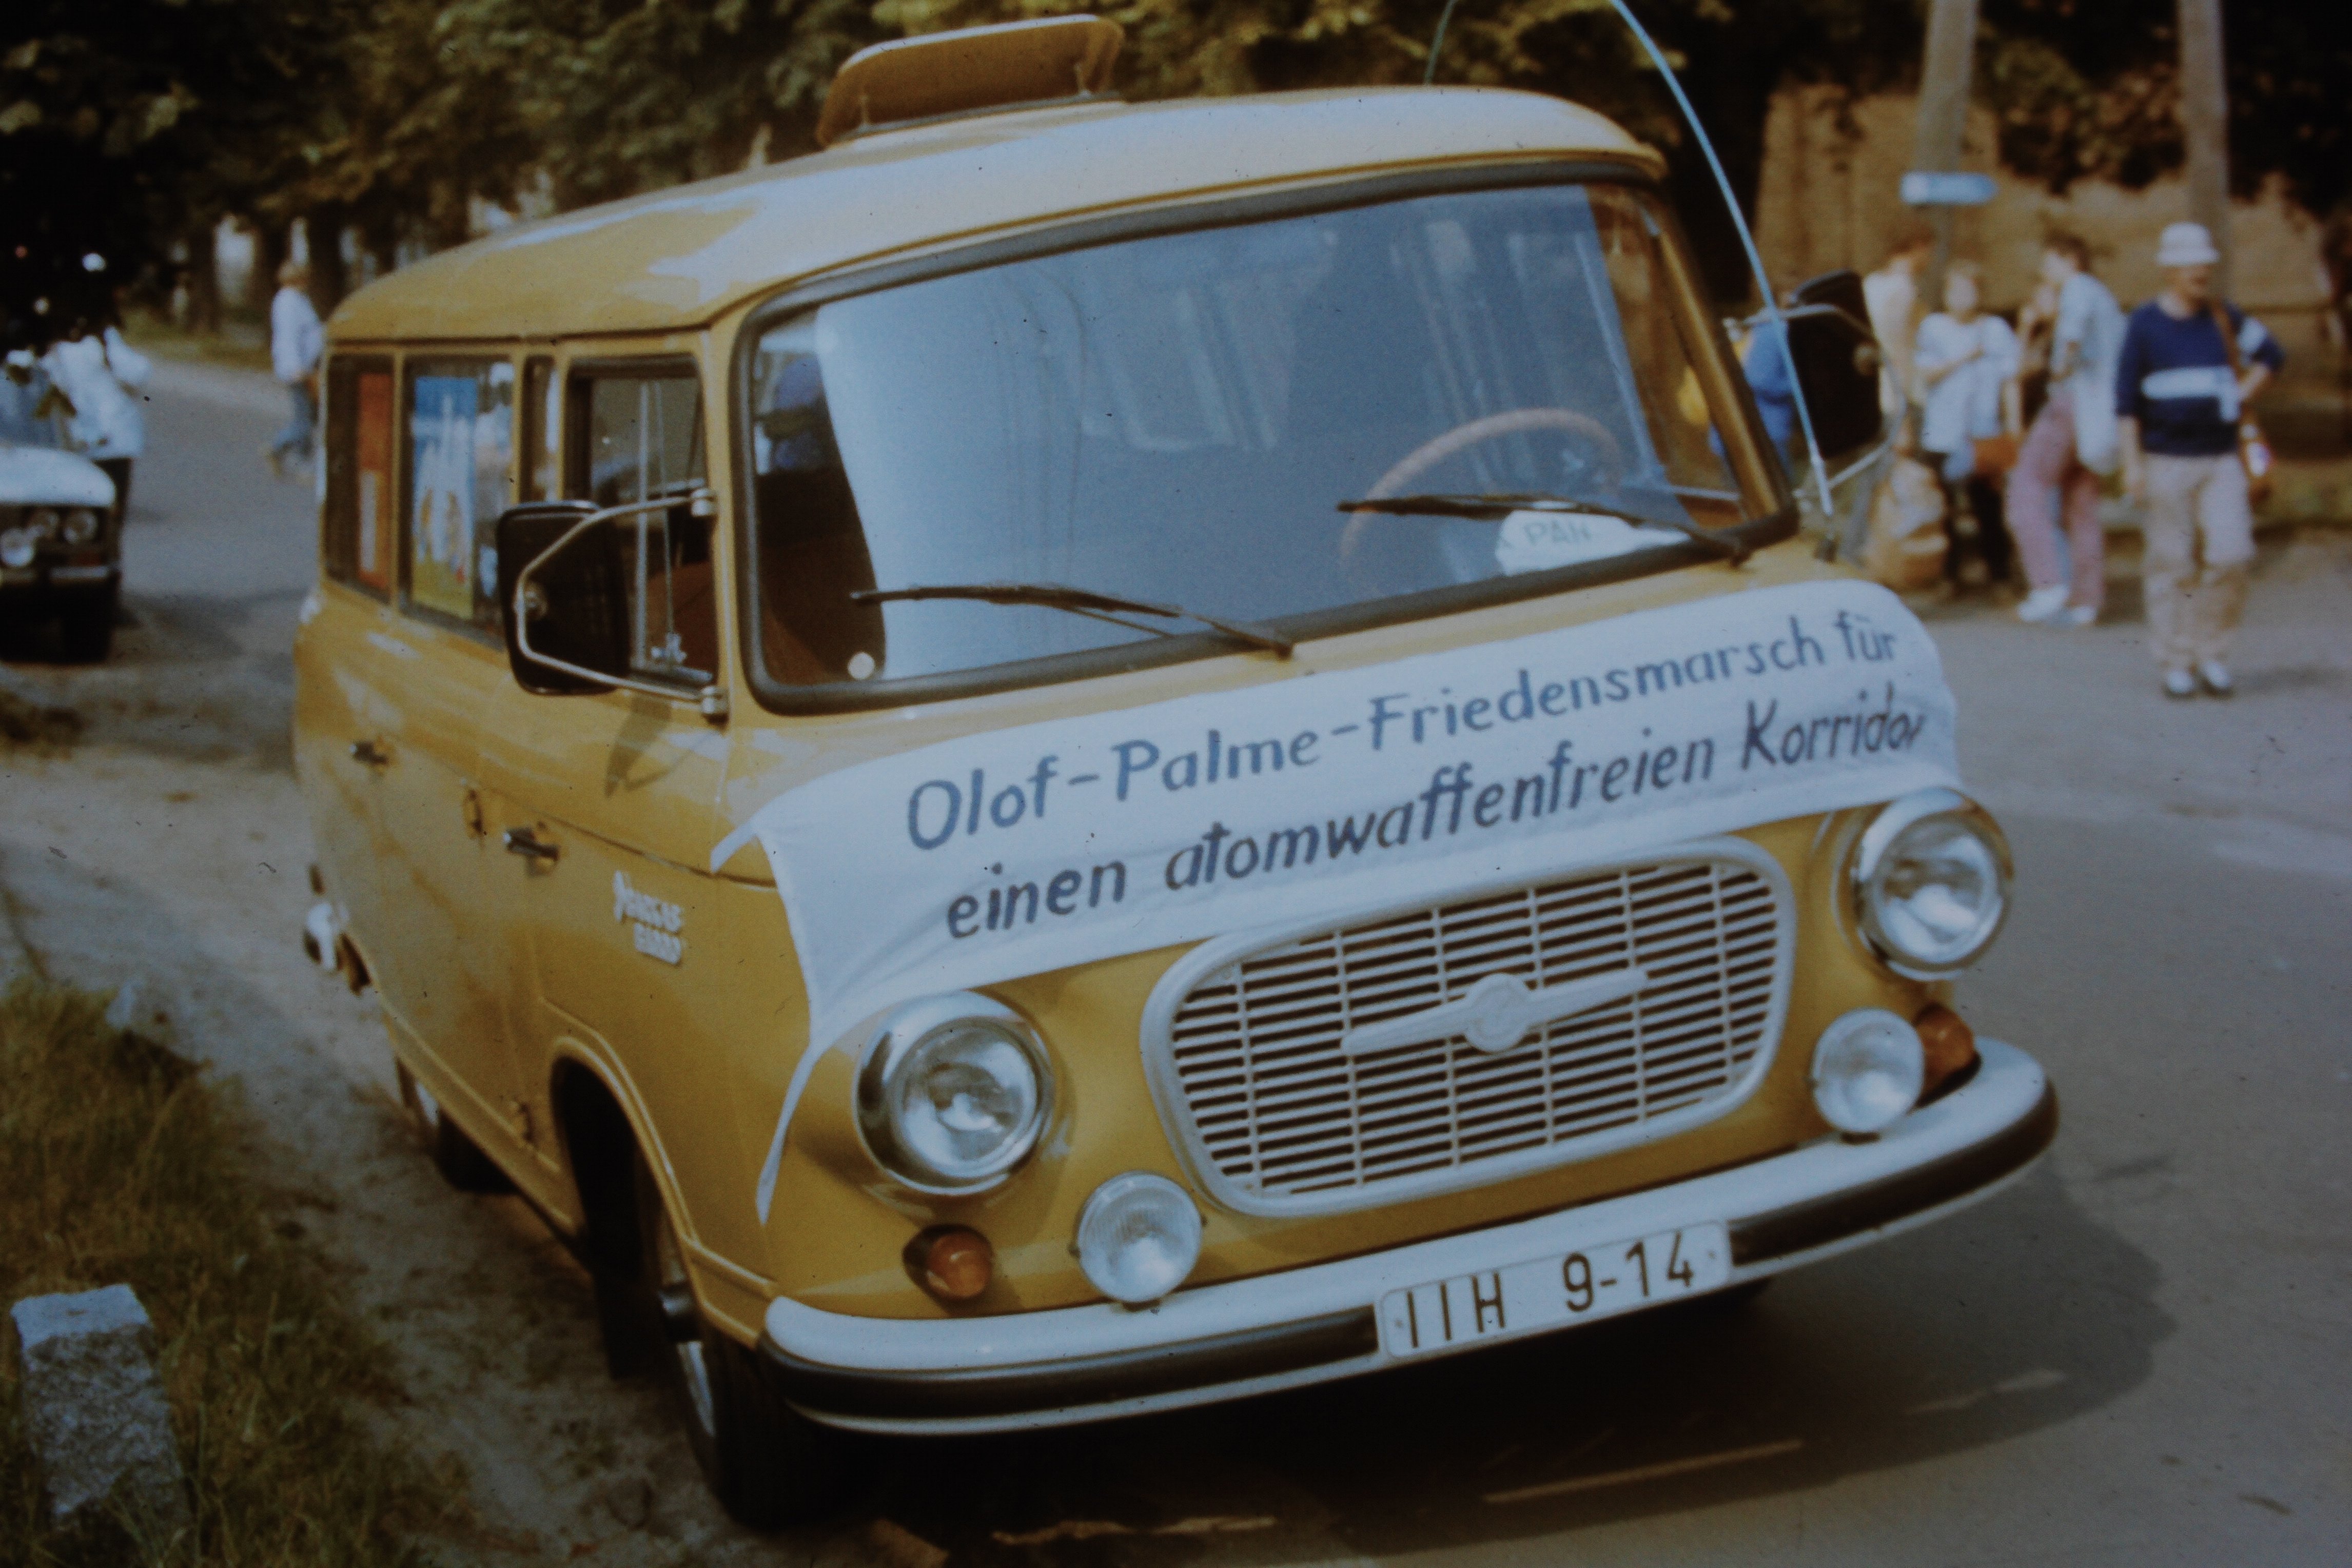 Olof-Palme-Marsch 1987: Barkas mit Transparent: "Olof-Palme-Friedensmarsch für einen atomwaffenfreien Korridor" (DDR Geschichtsmuseum im Dokumentationszentrum Perleberg CC BY-SA)